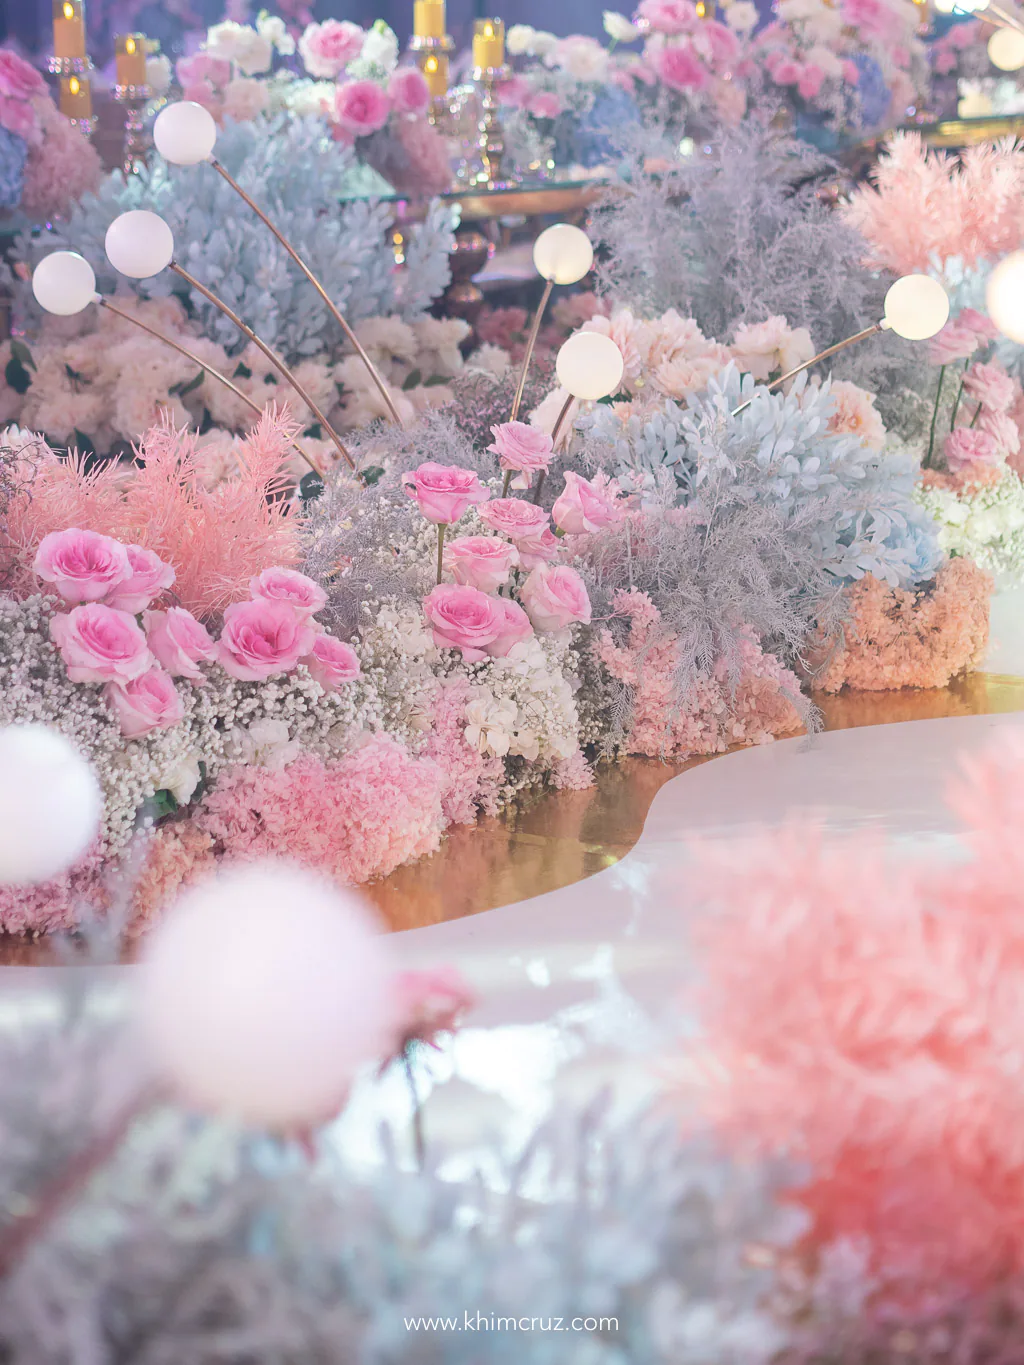 dreamy floral escape wedding aisle flower landscape details